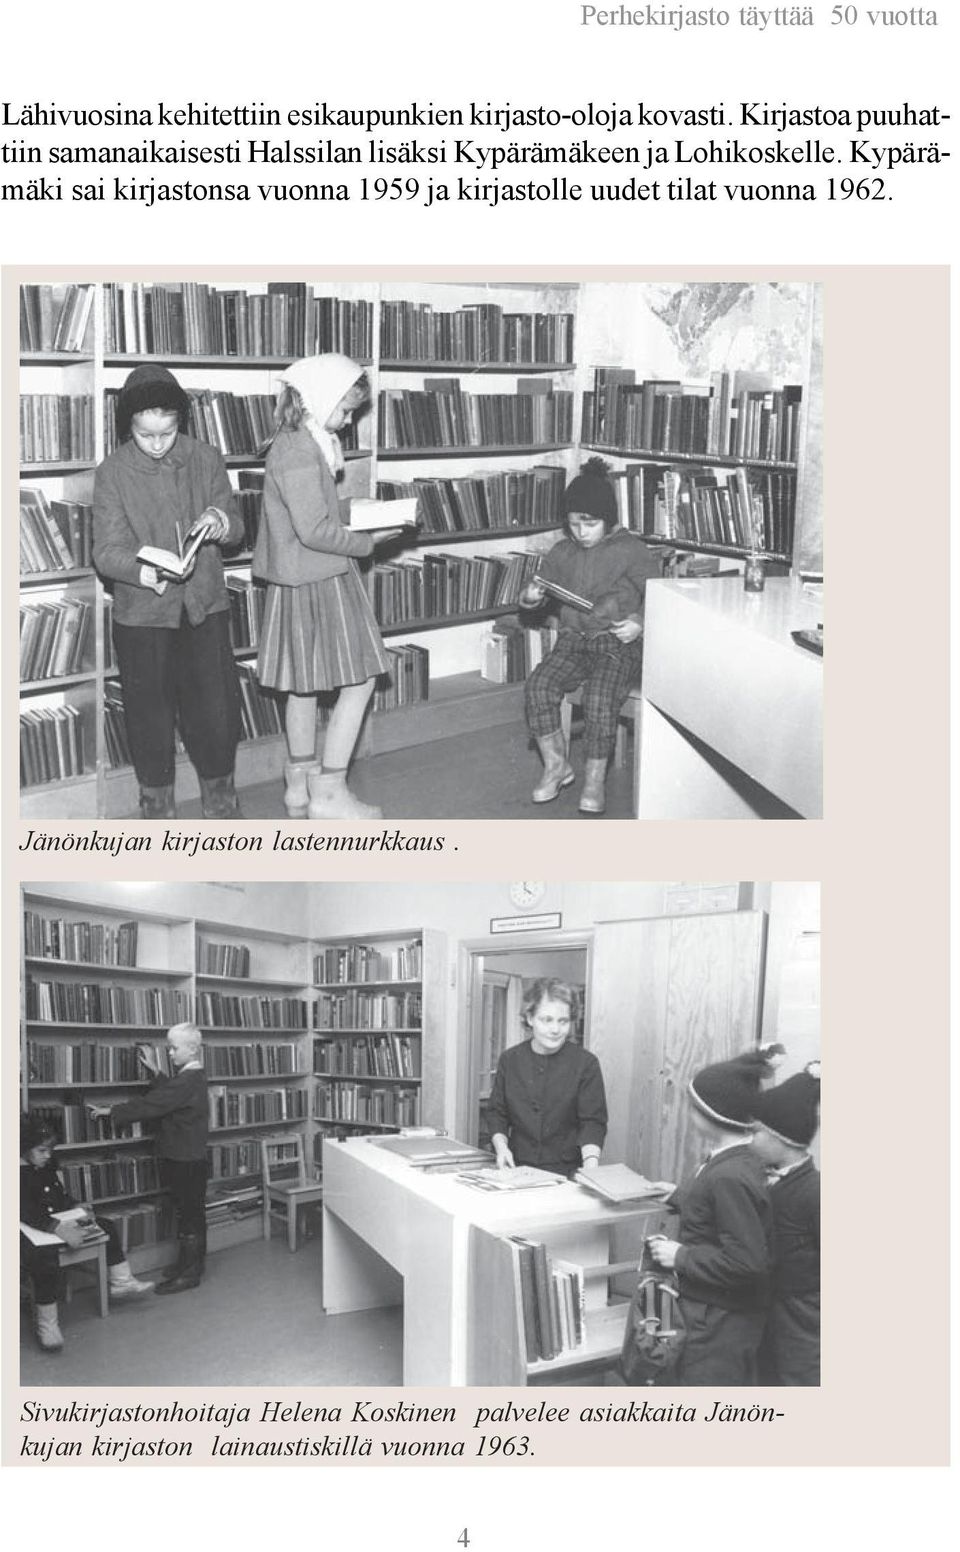 Kypärämäki sai kirjastonsa vuonna 1959 ja kirjastolle uudet tilat vuonna 1962.